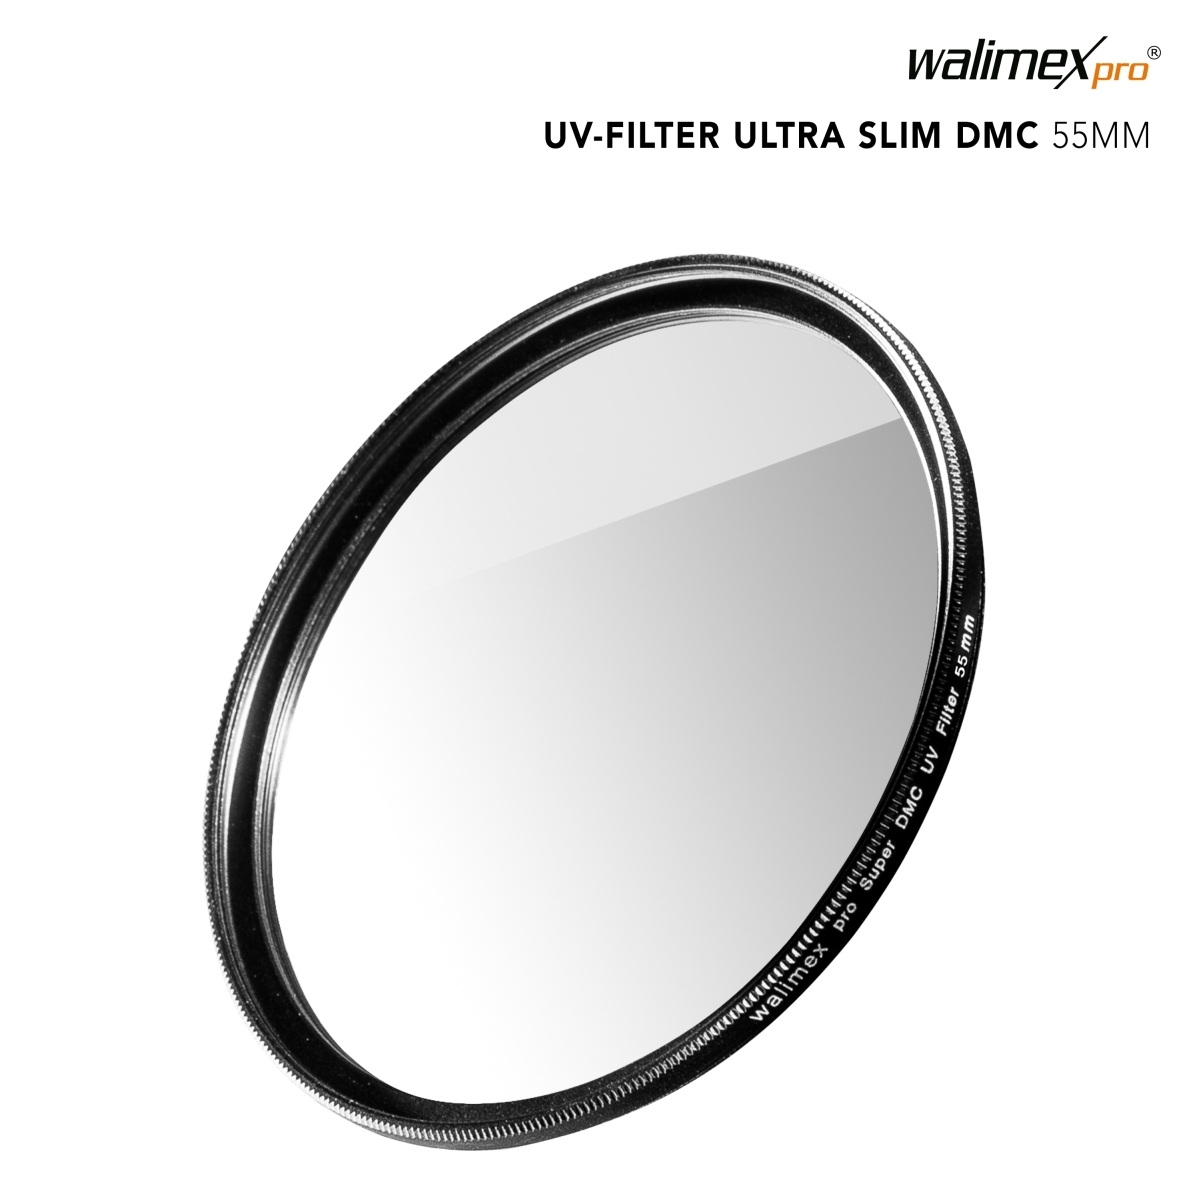 Walimex pro UV-Filter Super DMC 55mm#